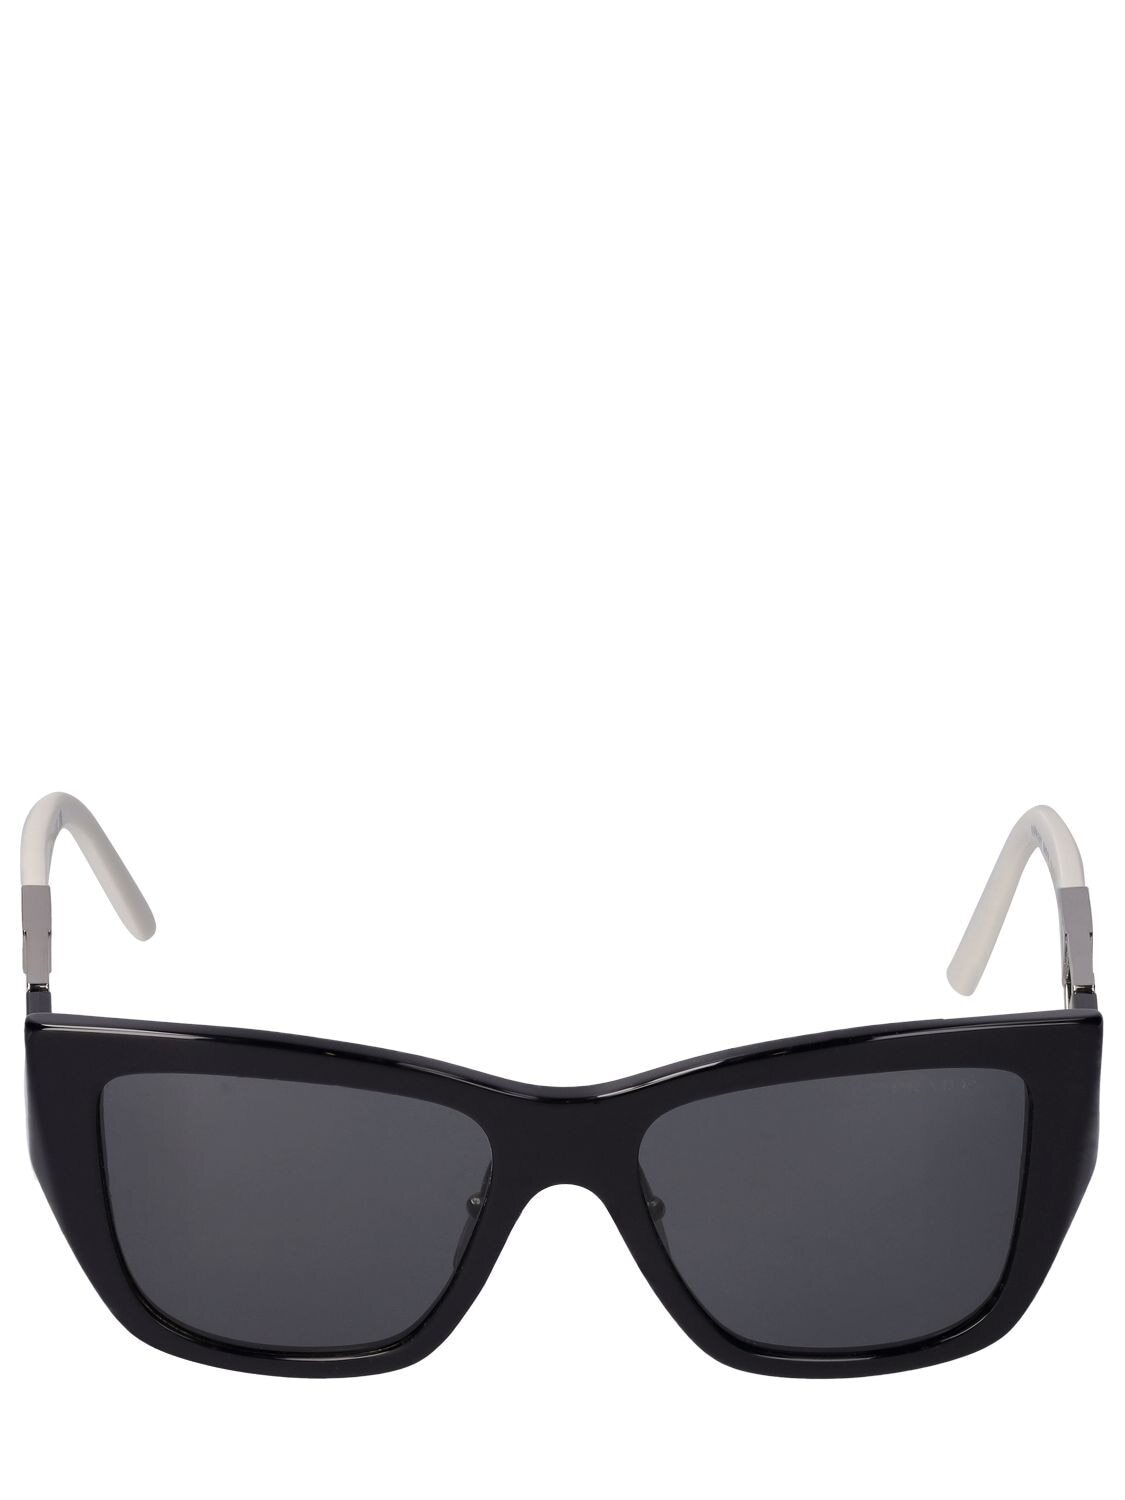 PRADA Obsesive Triangle Cat-eye Sunglasses in black / grey